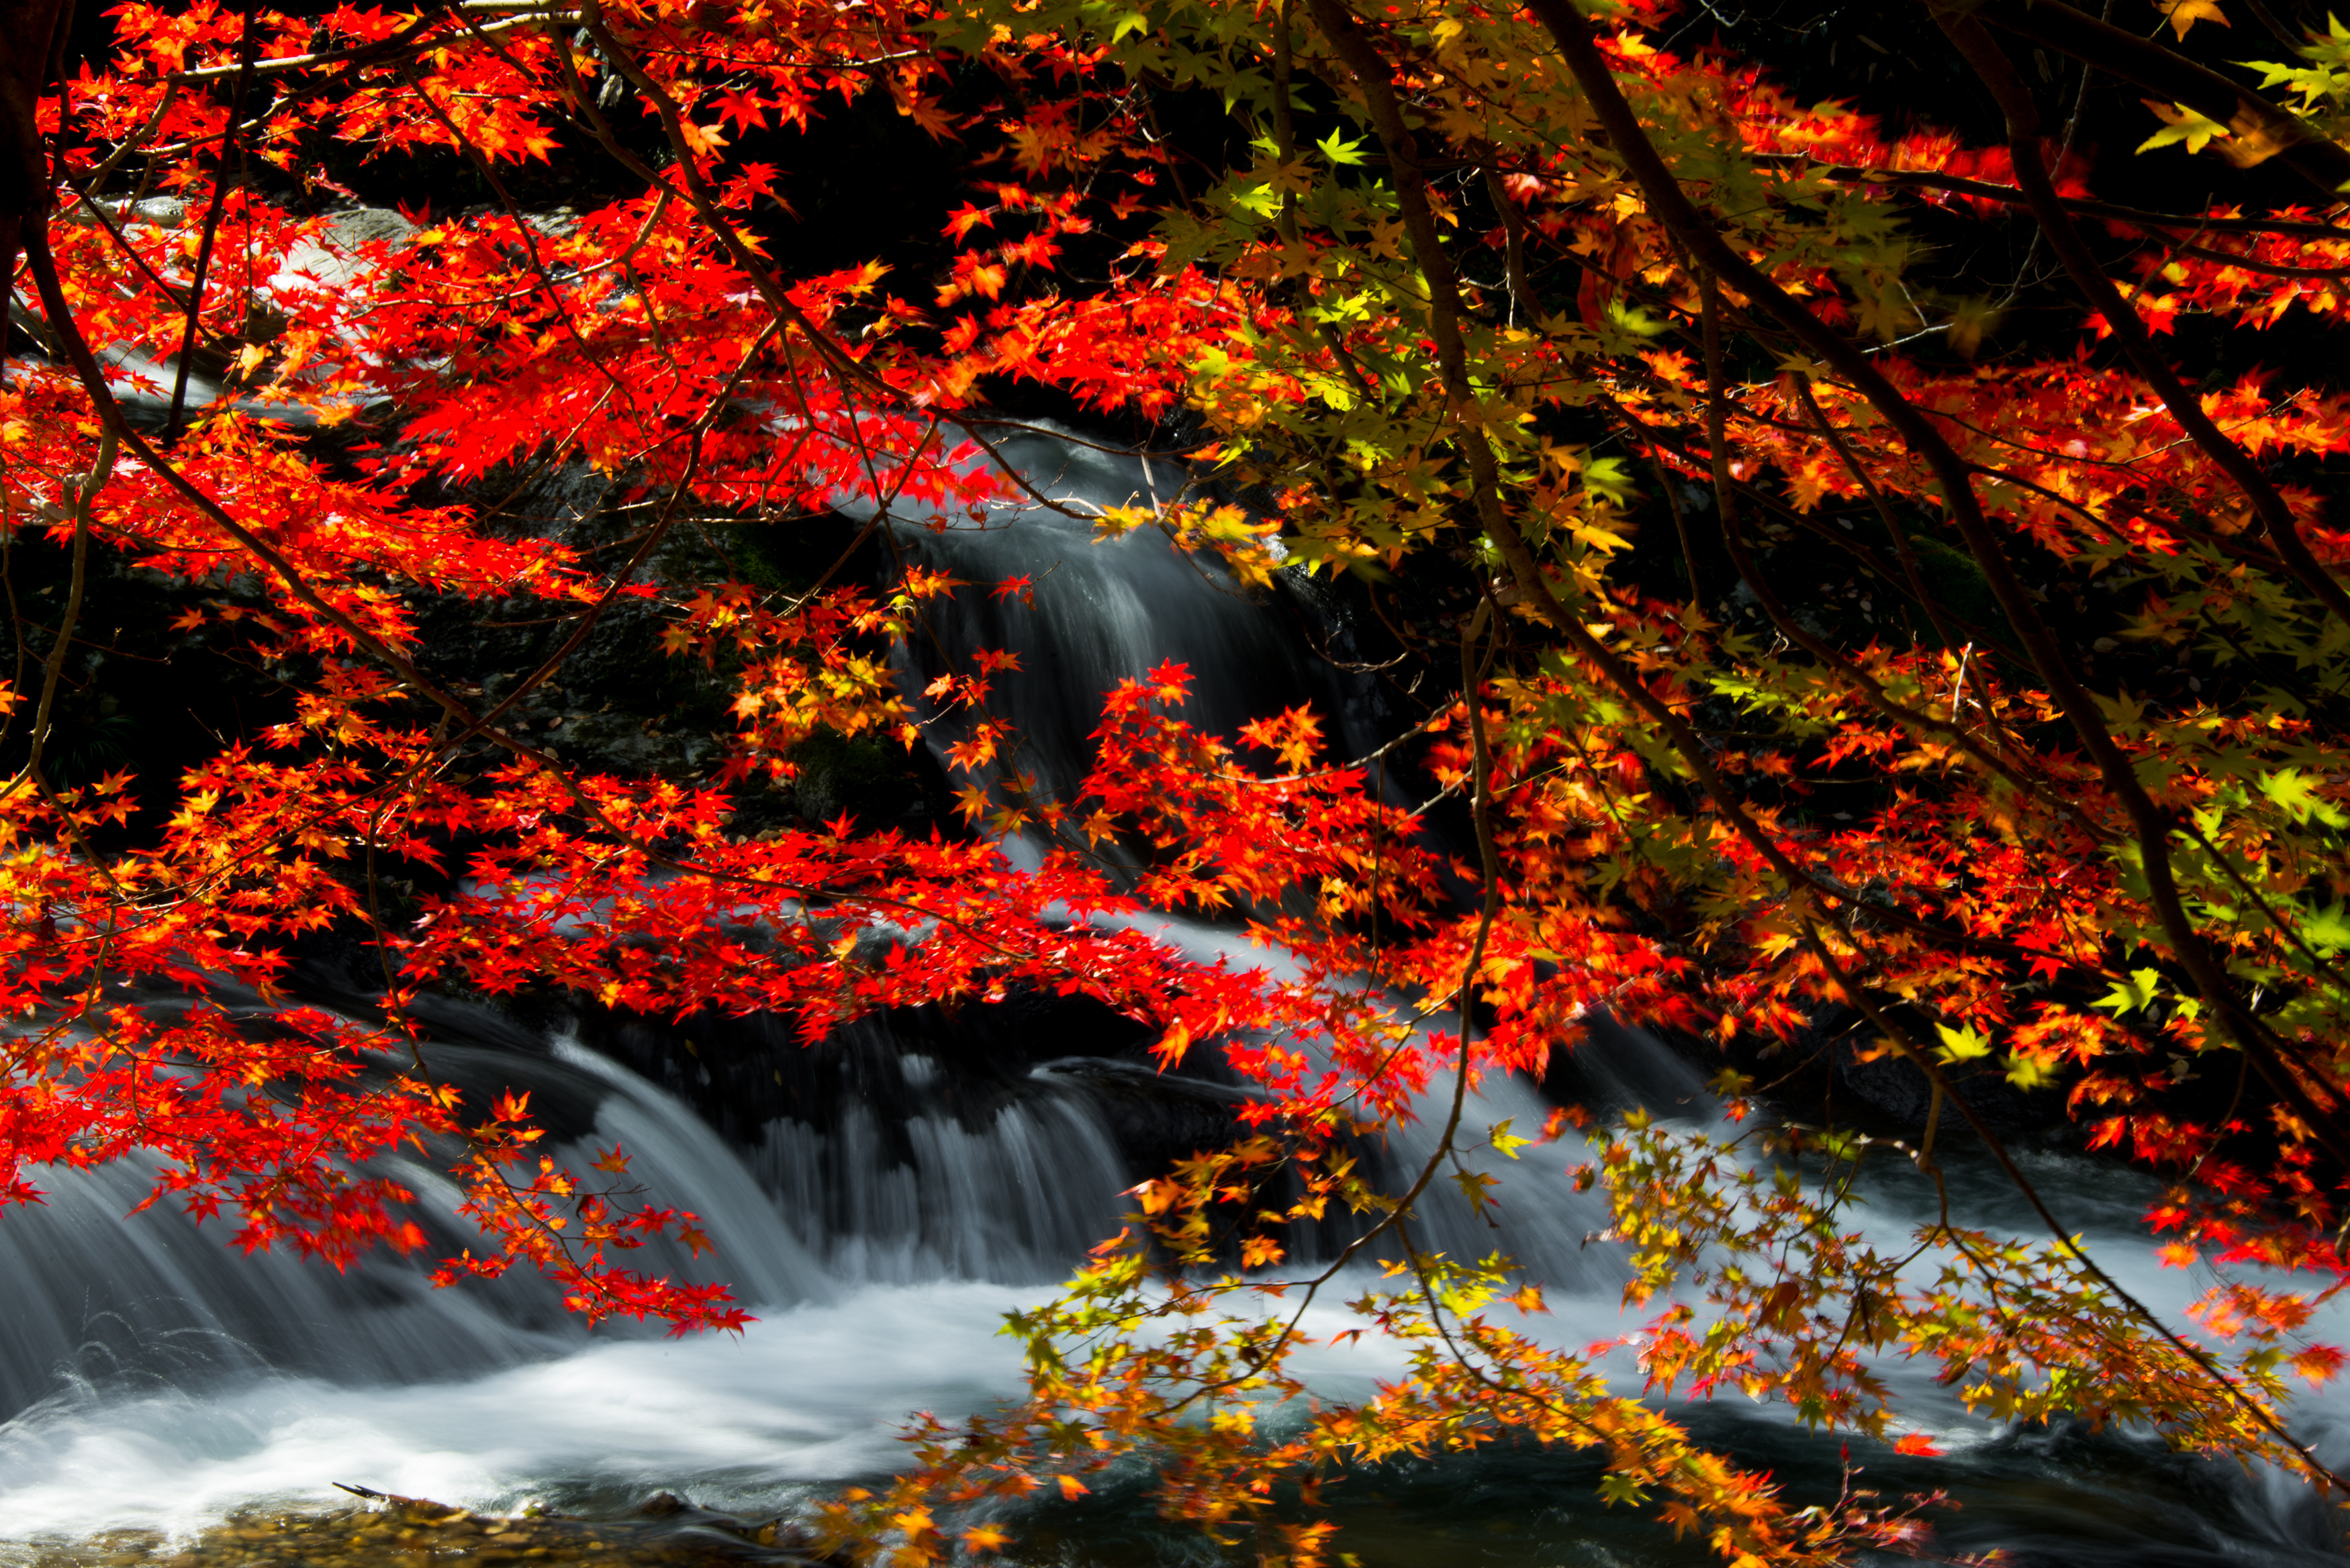 日本の風景写真5 滝の紅葉 2013年11月撮影 フリー写真素材 カフィネット